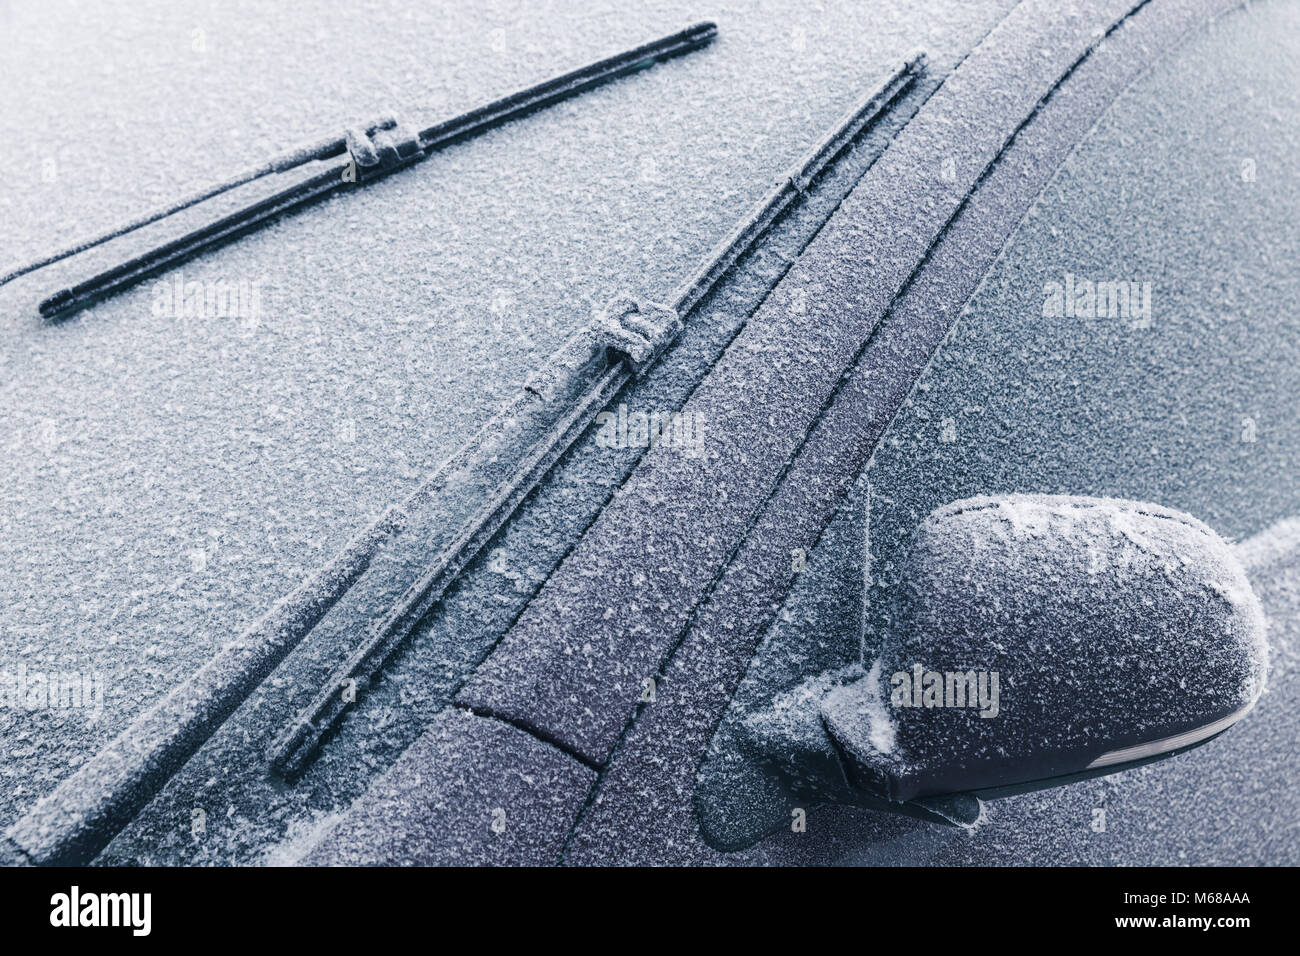 https://c8.alamy.com/compde/m68aaa/auto-scheibenwischer-auf-der-windschutzscheibe-und-spiegel-mit-frost-im-kalten-winter-abgedeckt-m68aaa.jpg